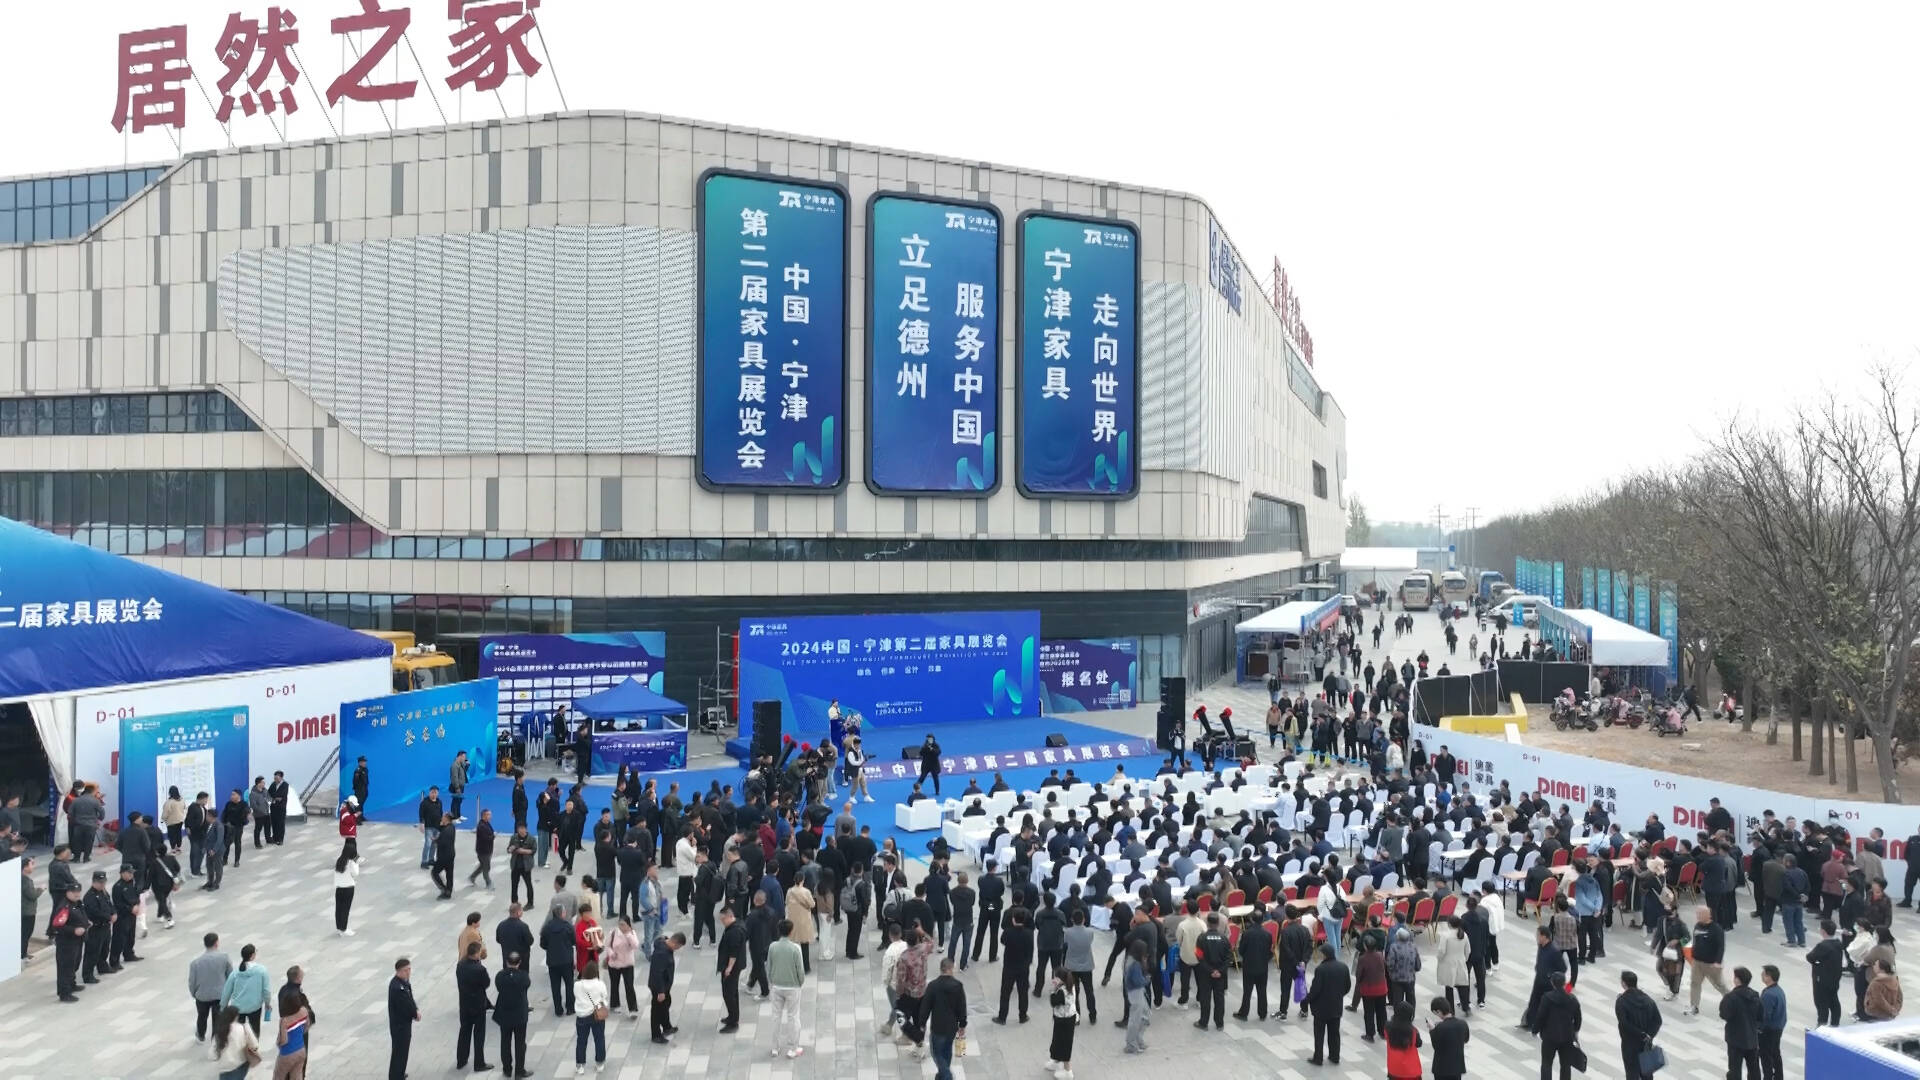 宁津县第二届家具展览会开幕 1400余家企业参展